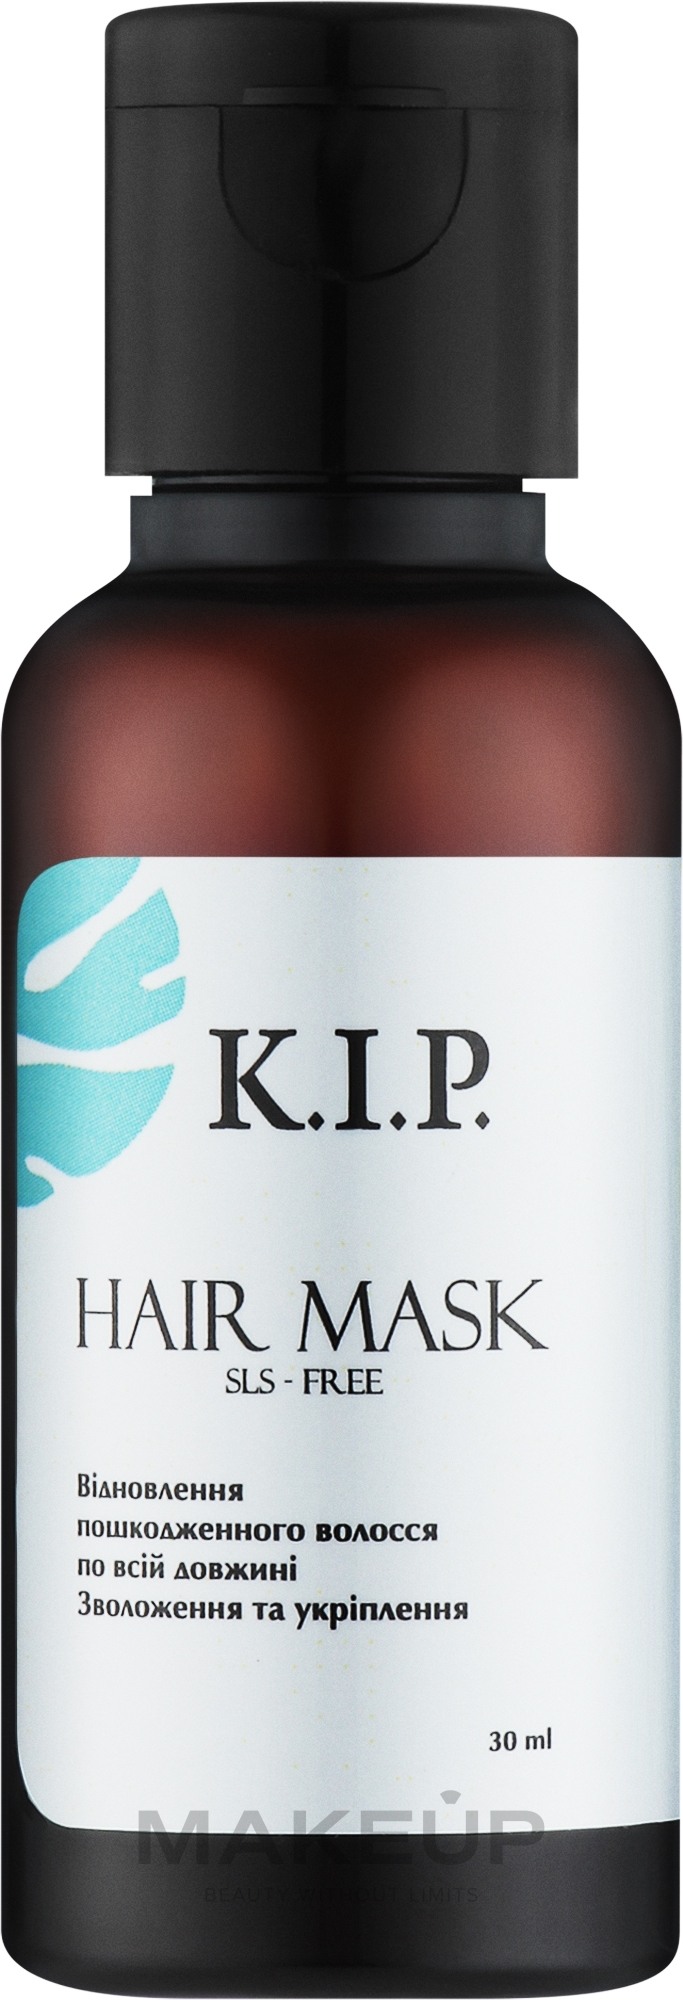 Маска для волос "Увлажнение и укрепление" - K.I.P. Hair Mask (пробник) — фото 30ml